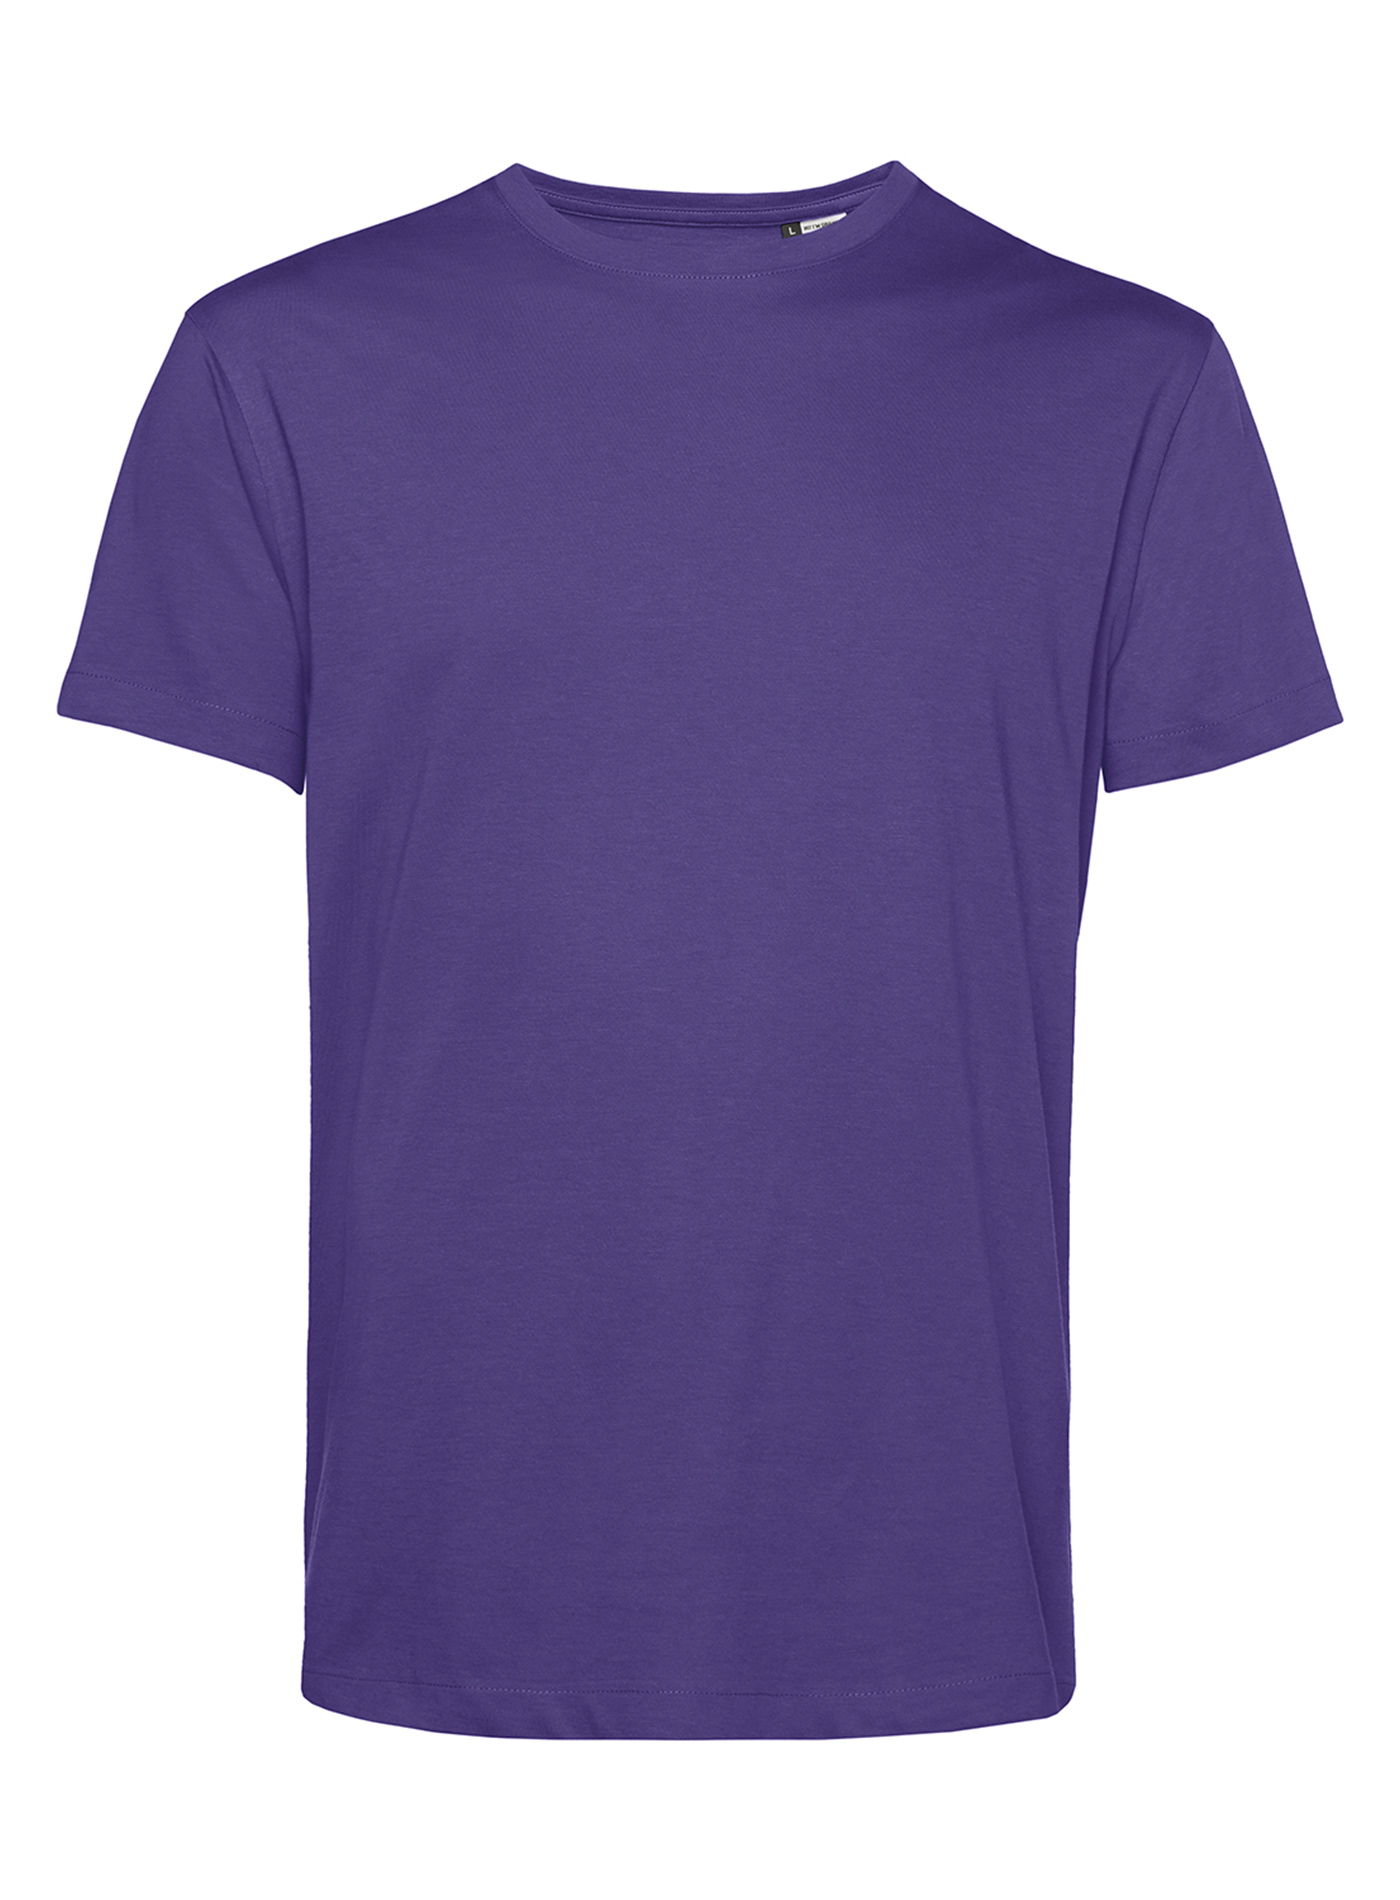 Pánské tričko B&C Collection Organic - Tmavě fialová XXL